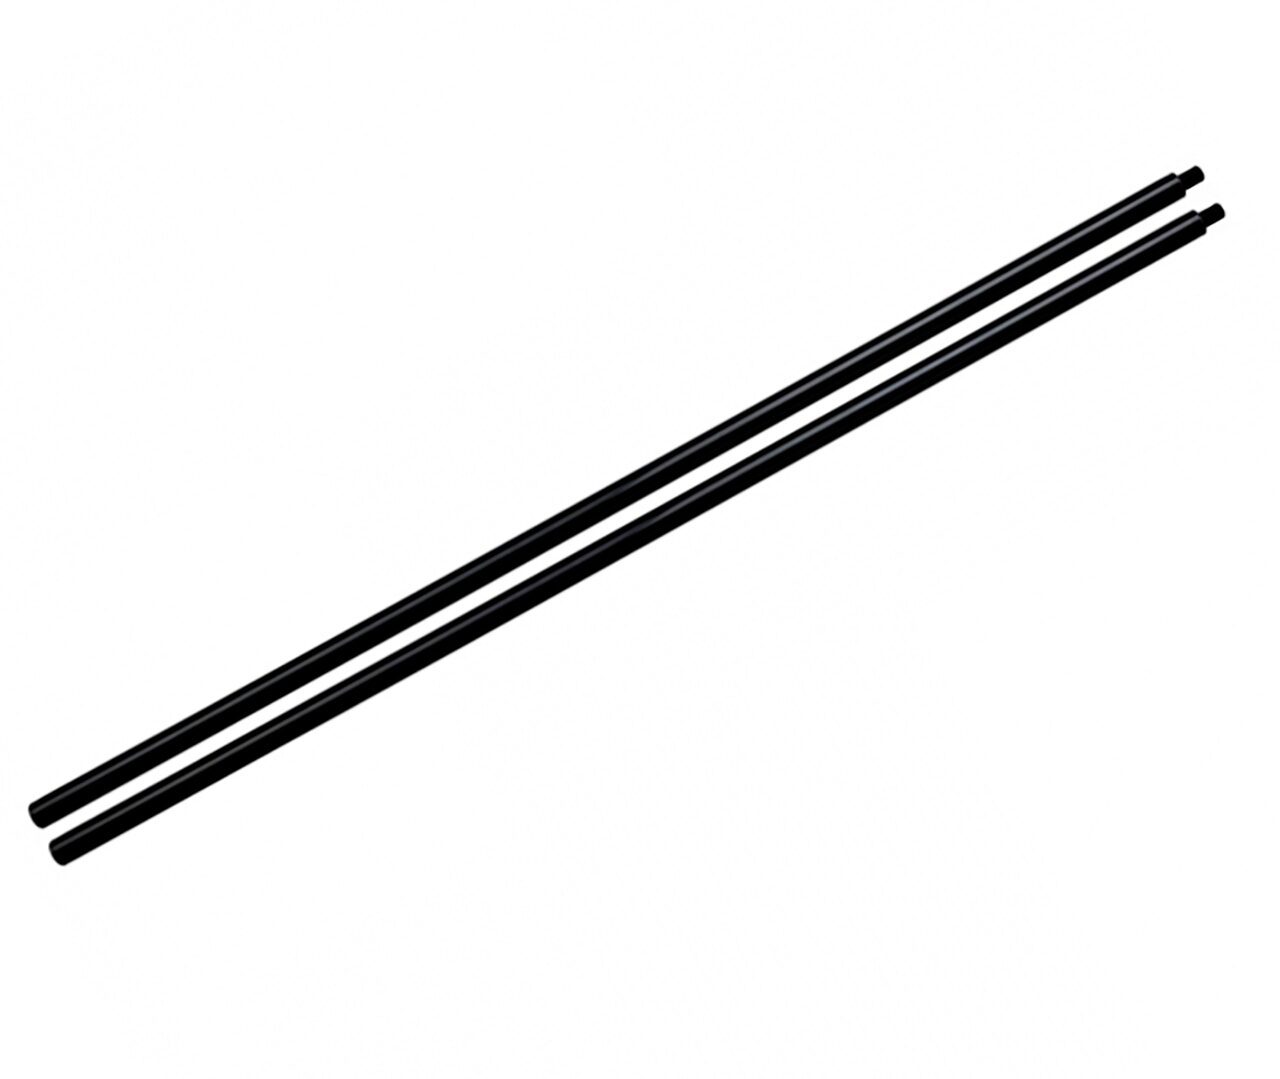 Трубка дополнительная (колено) для стационарного маркера 1 м Fox (Фокс) - Halo Illuminated Marker Pole Extension Kit, 2 шт